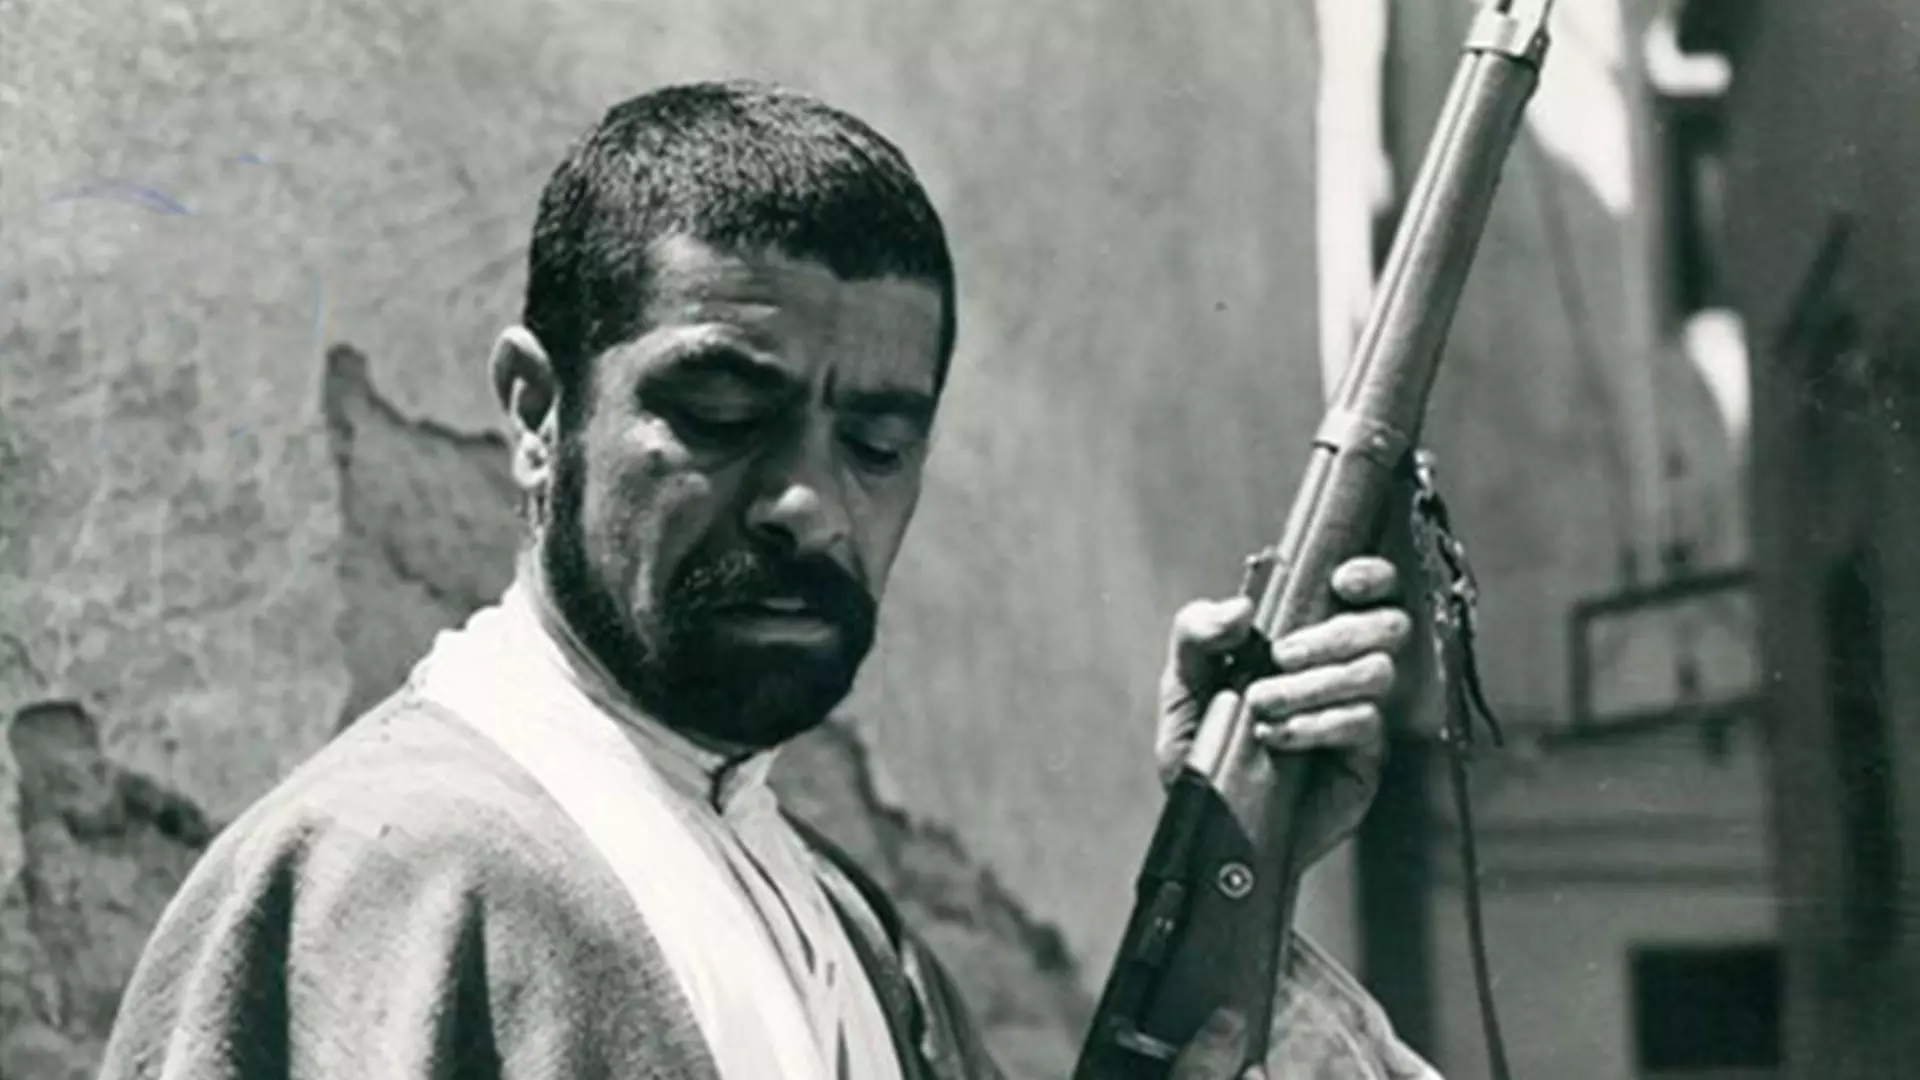 زار ممد در حال پاک کردن تفنگ در فیلم تنگسیر